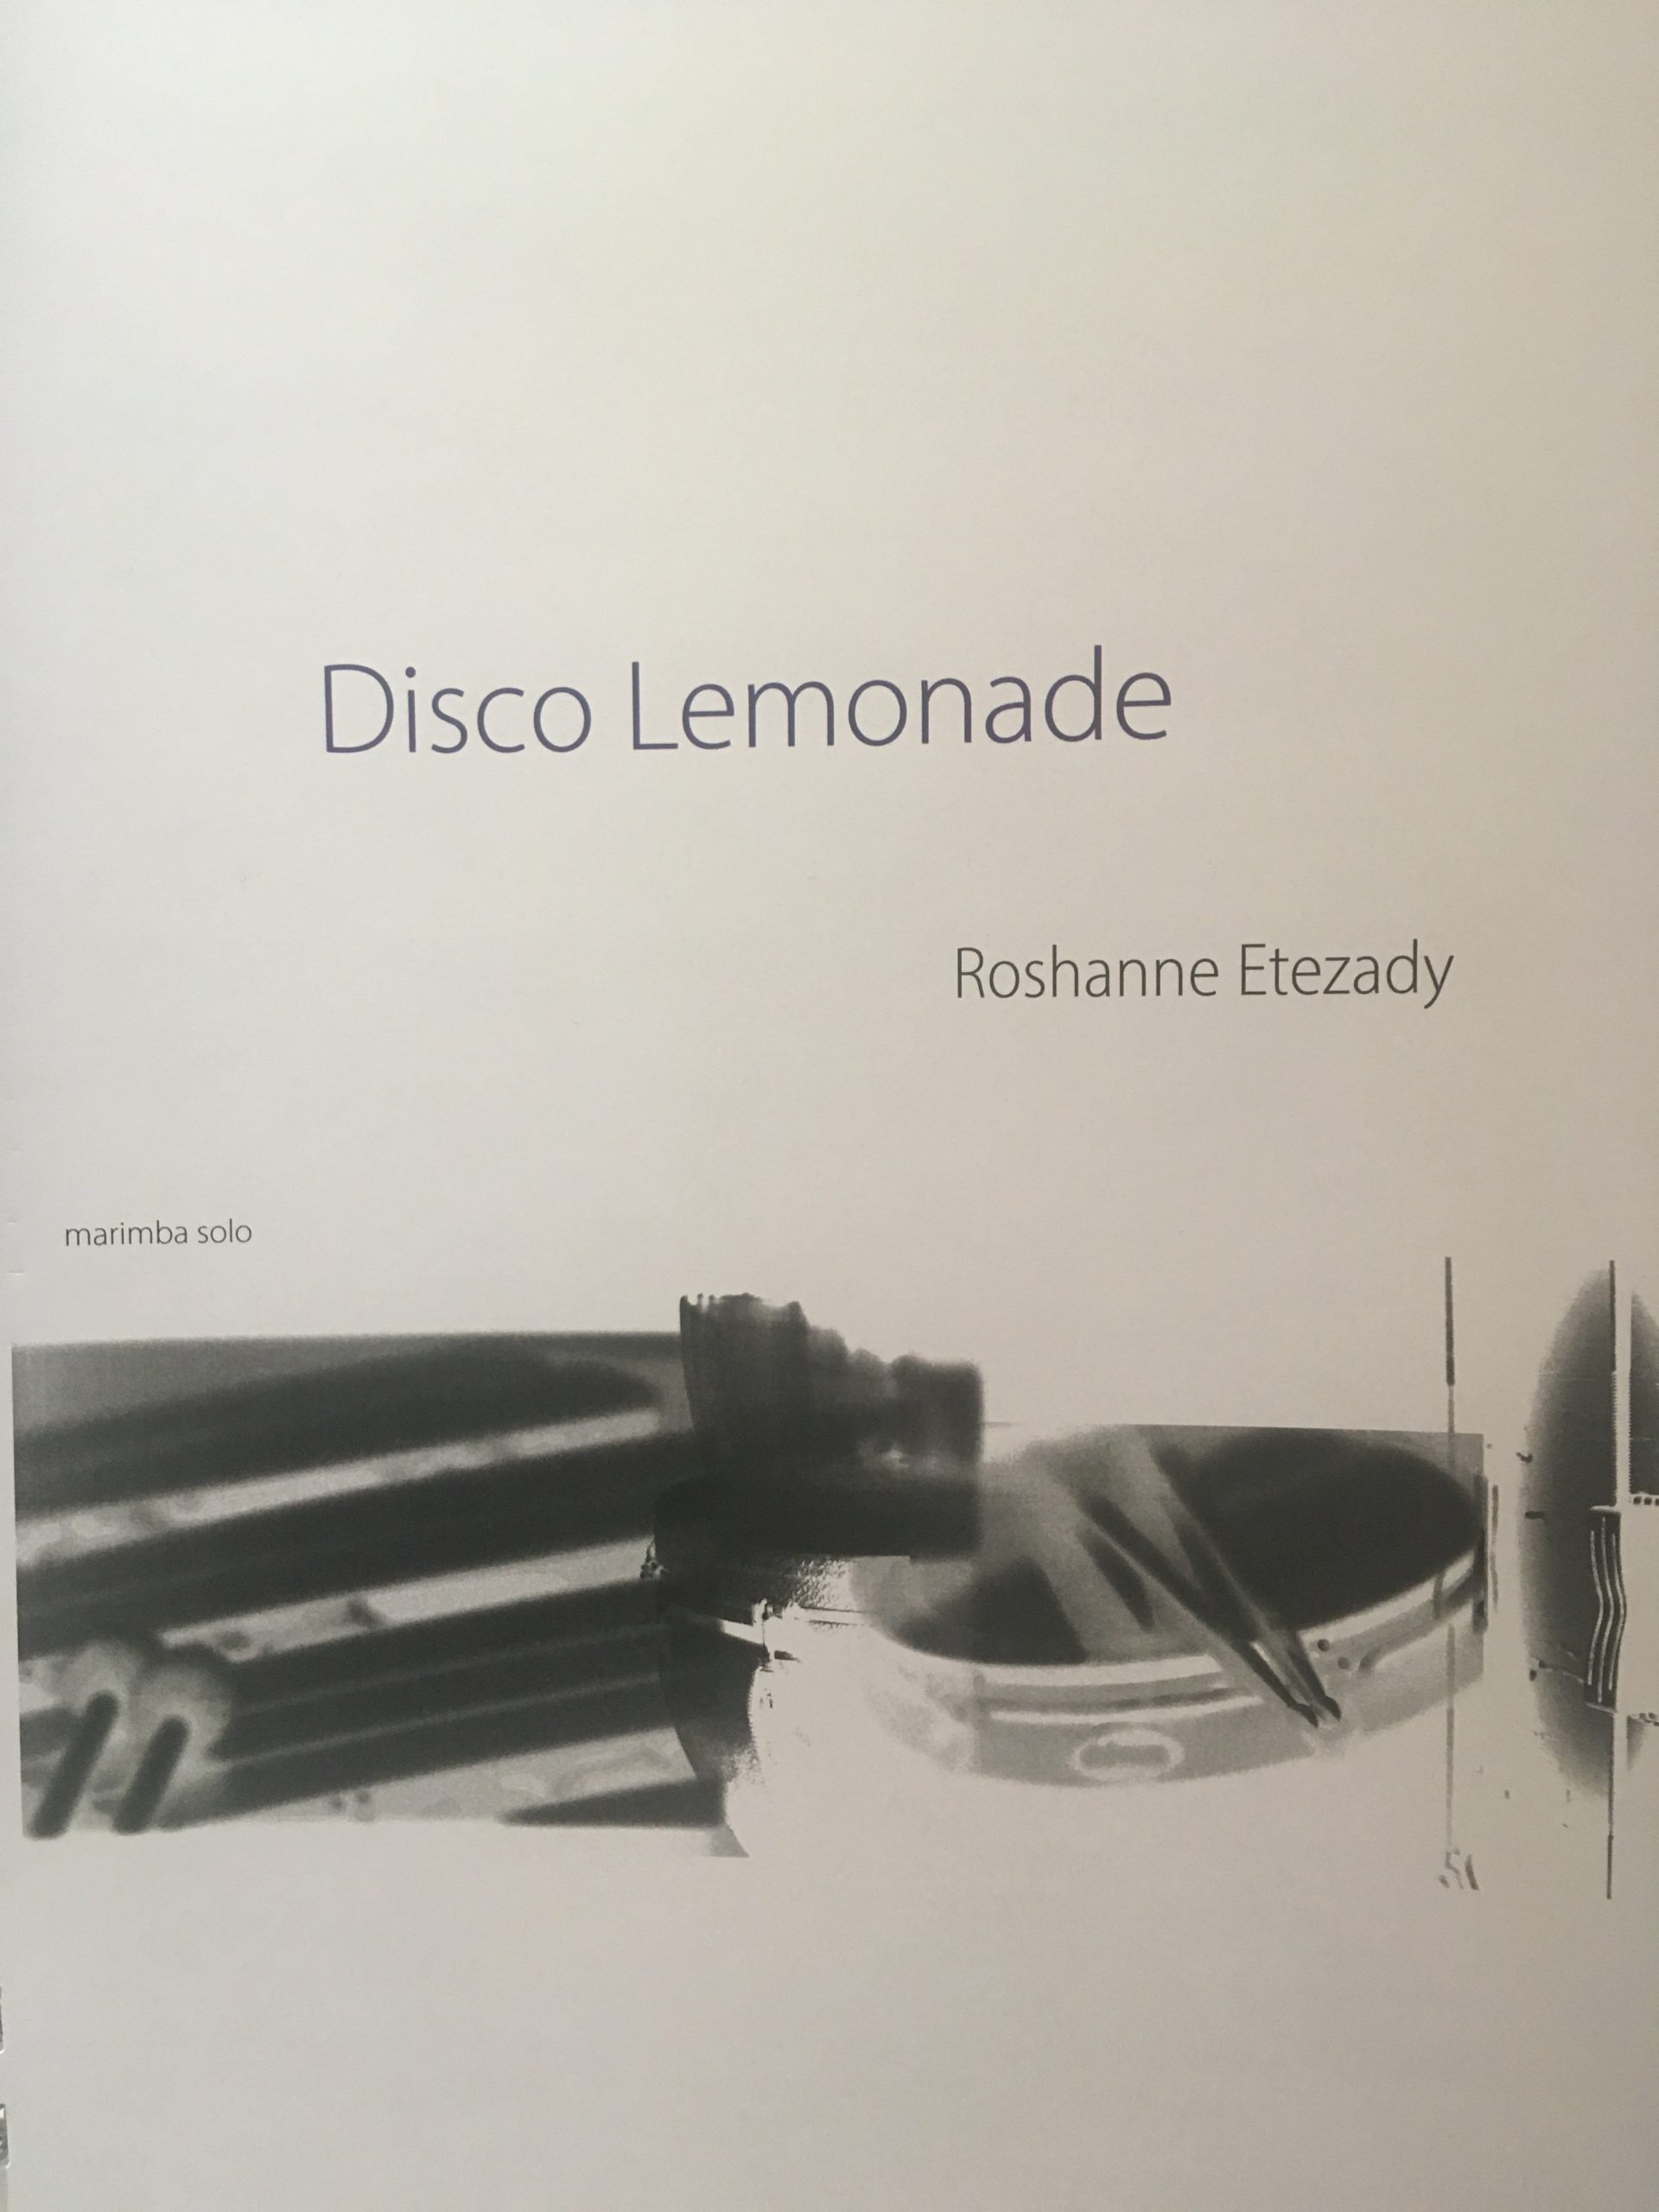 Disco Lemonade by Roshanne Etezady